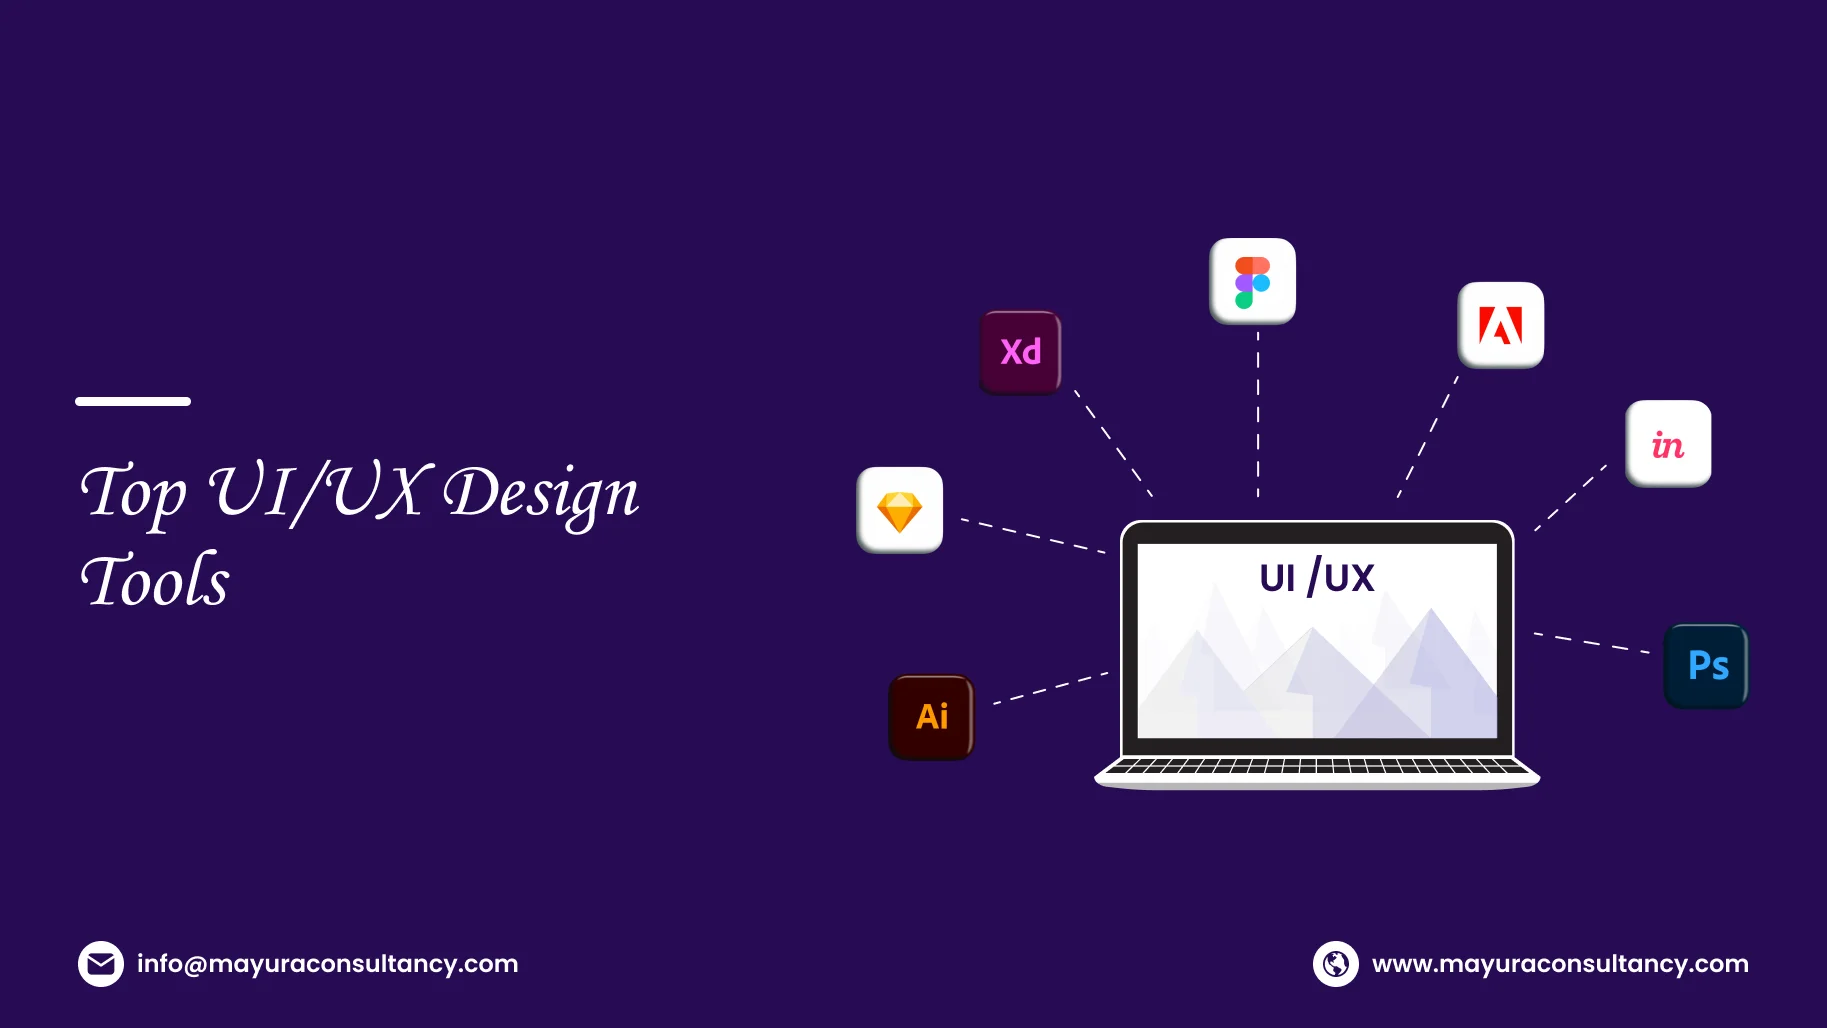 Top UI/UX Design Tools